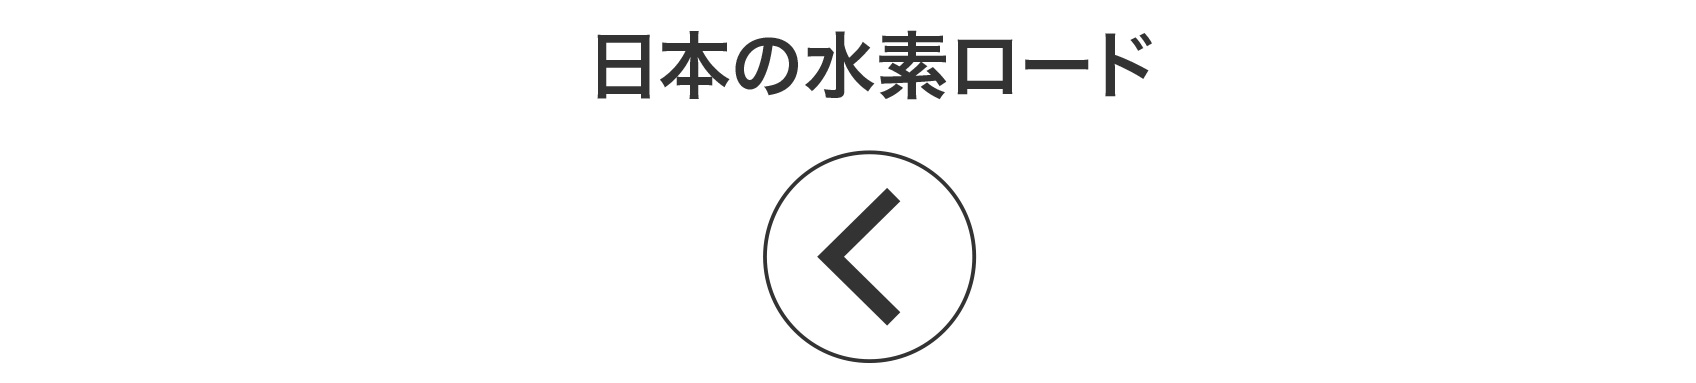 日本の水素ロード